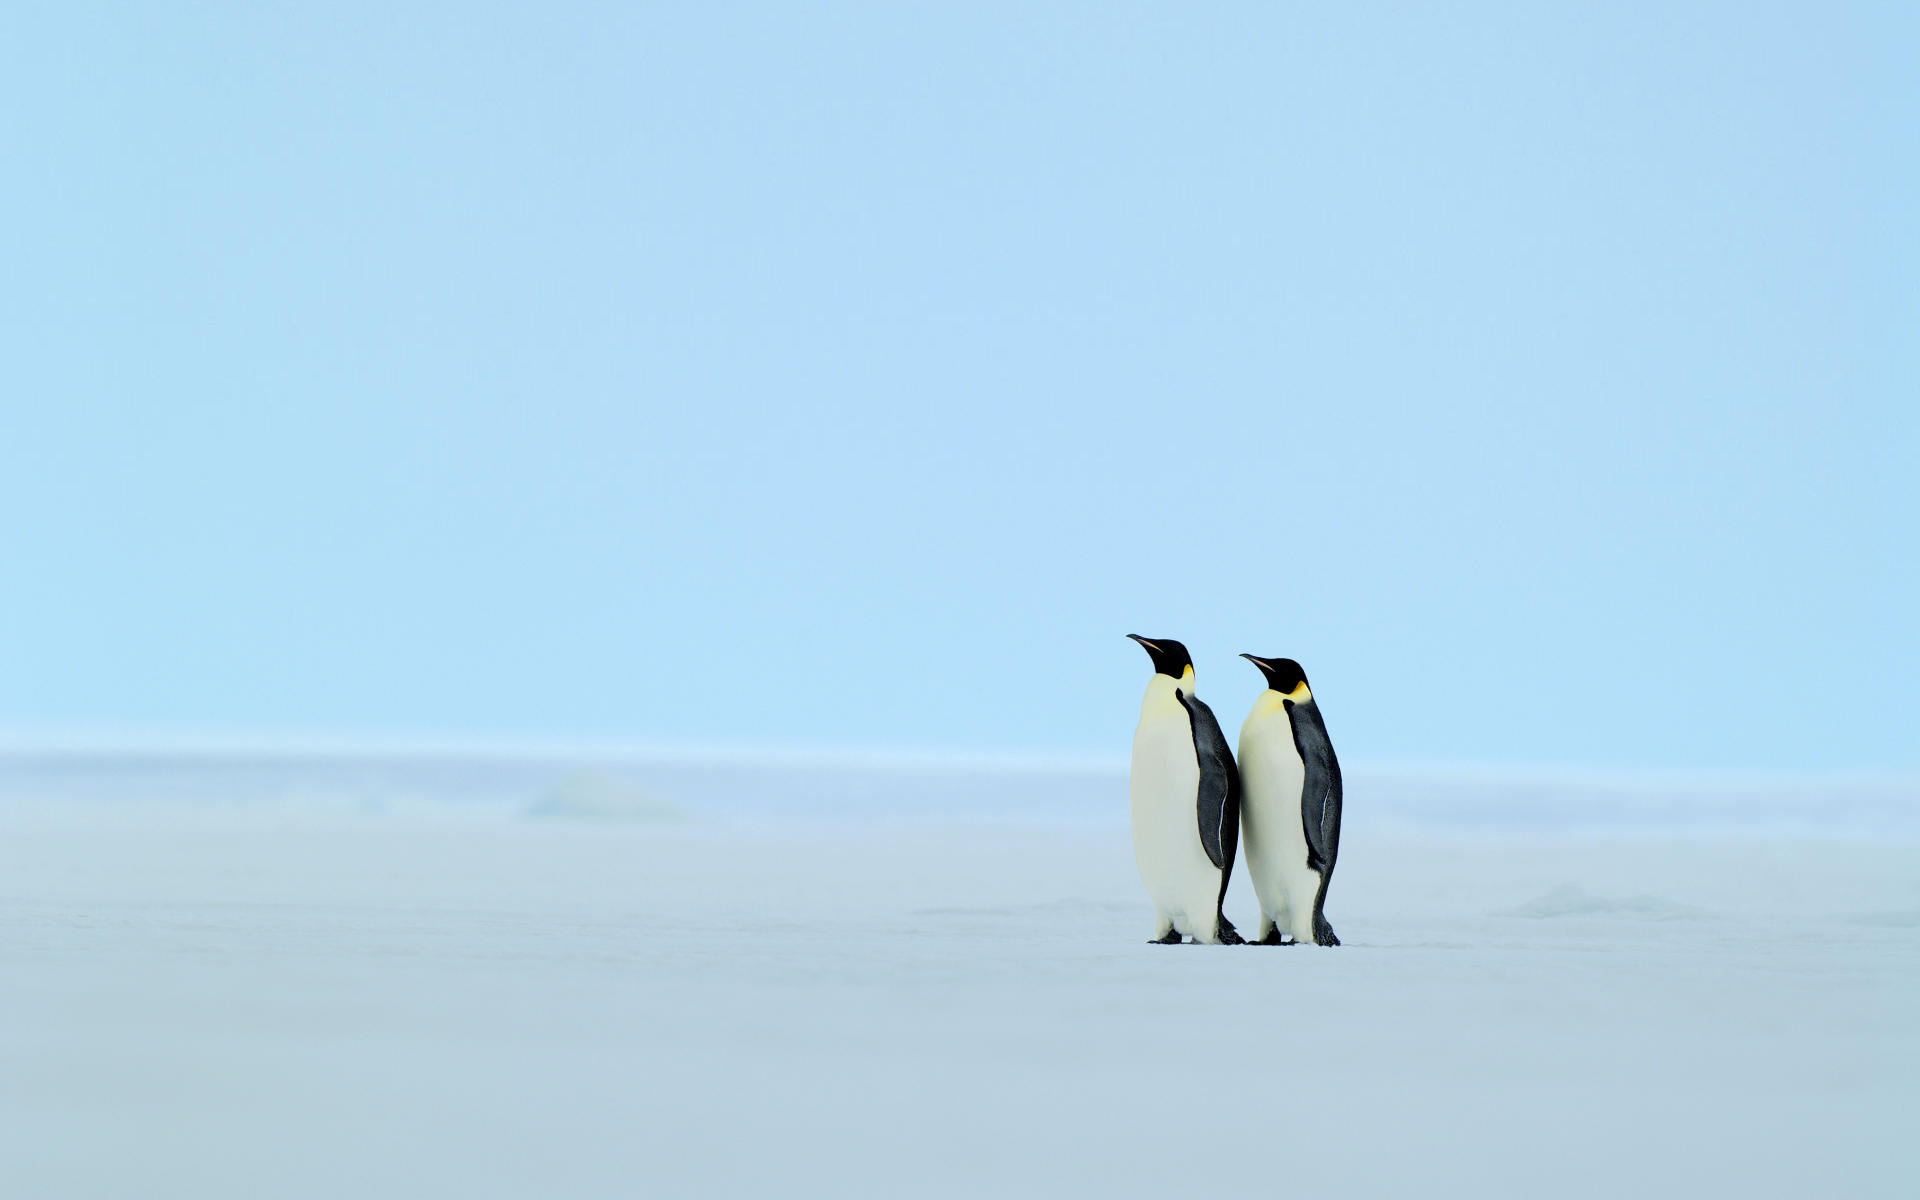 penguin wallpapers - HD Desktop Wallpapers | 4k HD